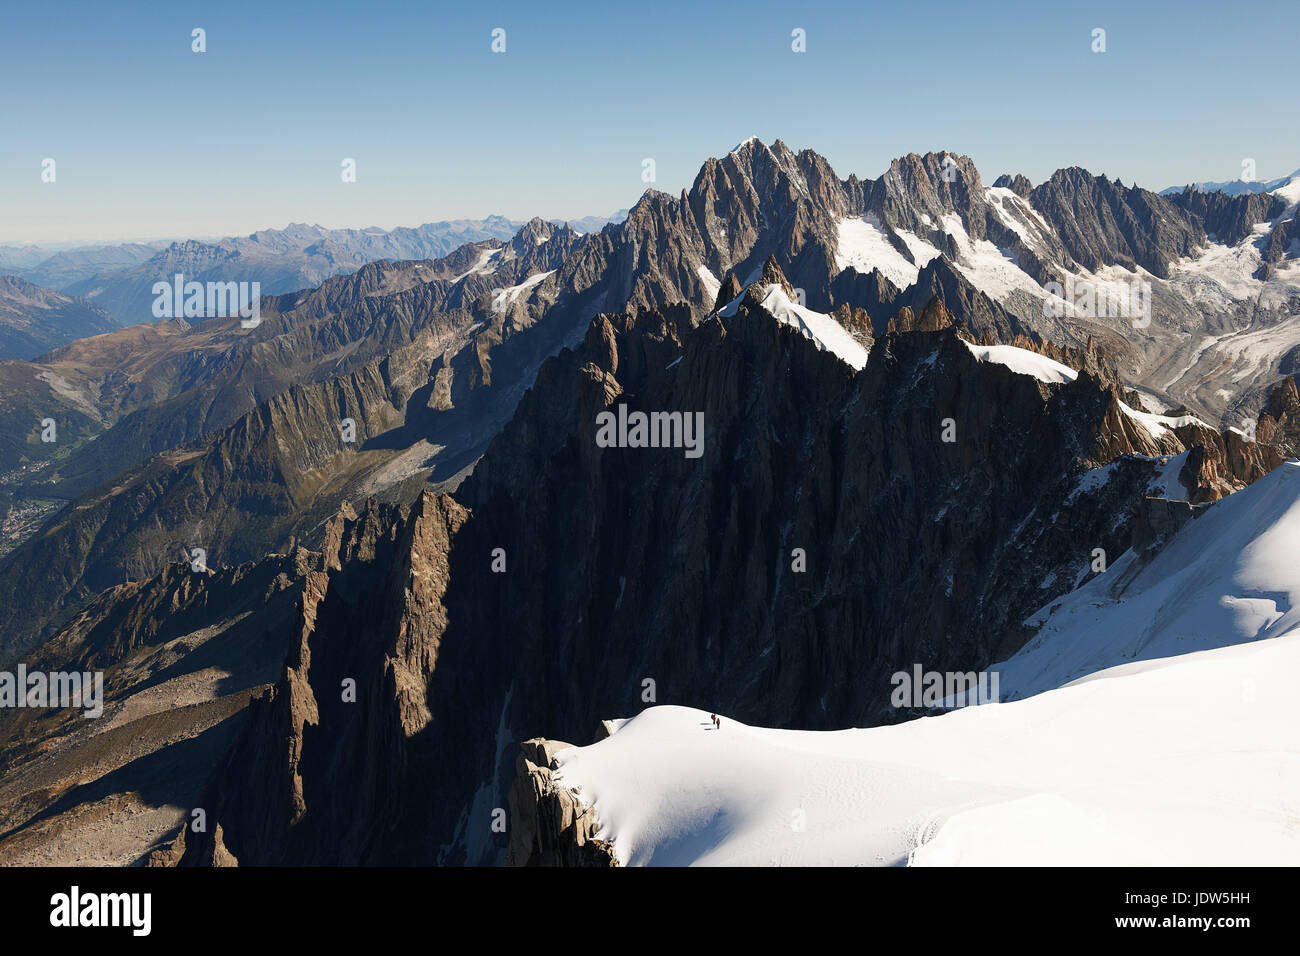 Mountain scene, Chamonix, Haute Savoie, France Stock Photo